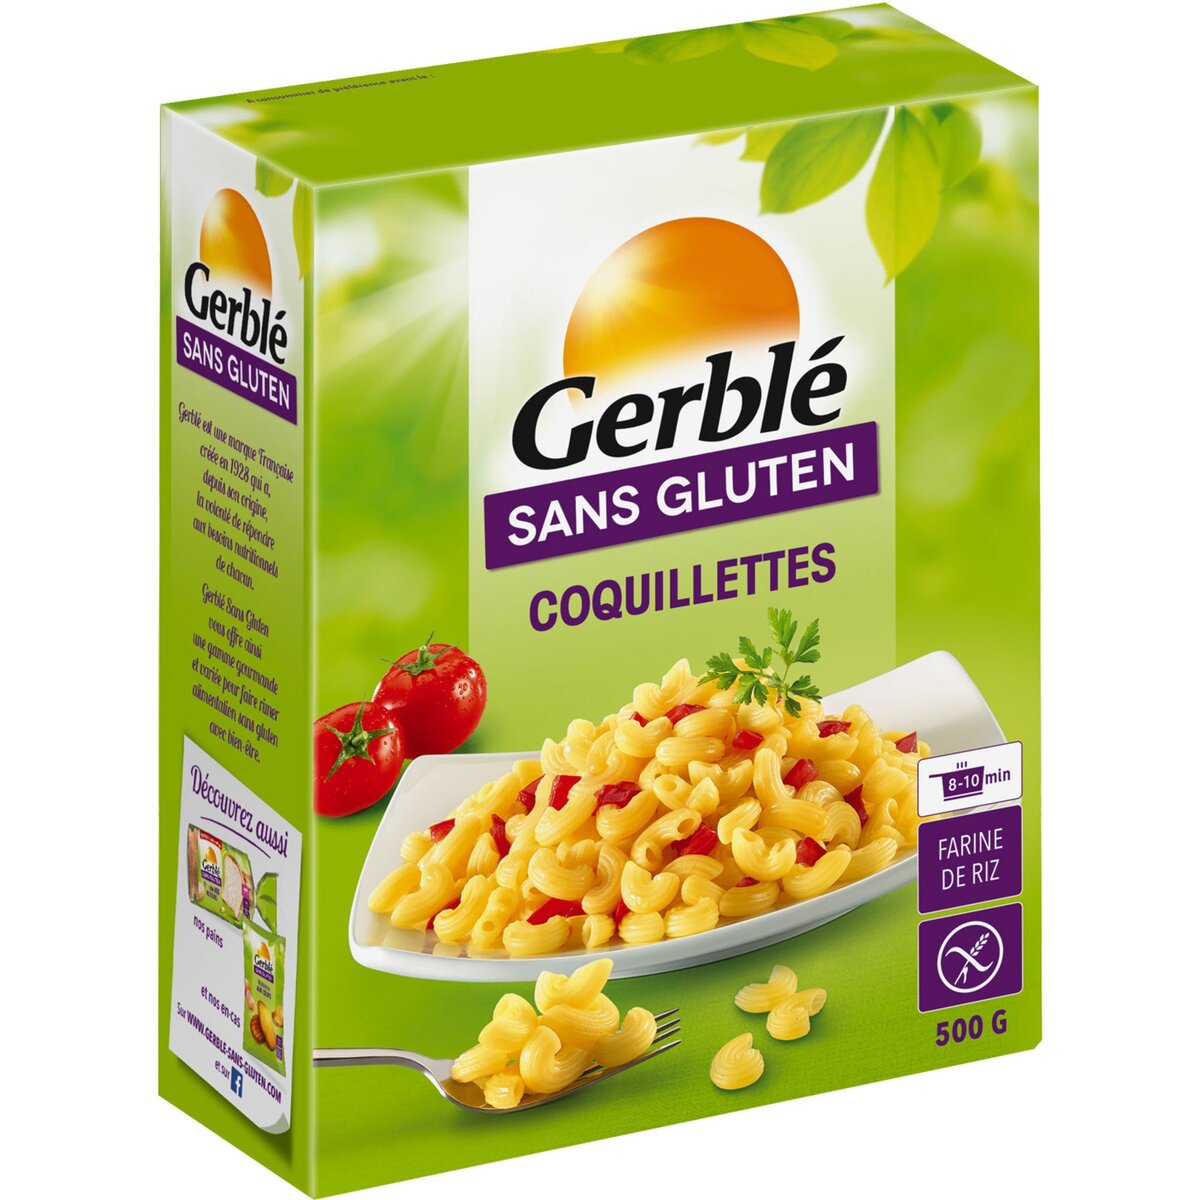 GERBLE Gerble coquillettes sans gluten 500g